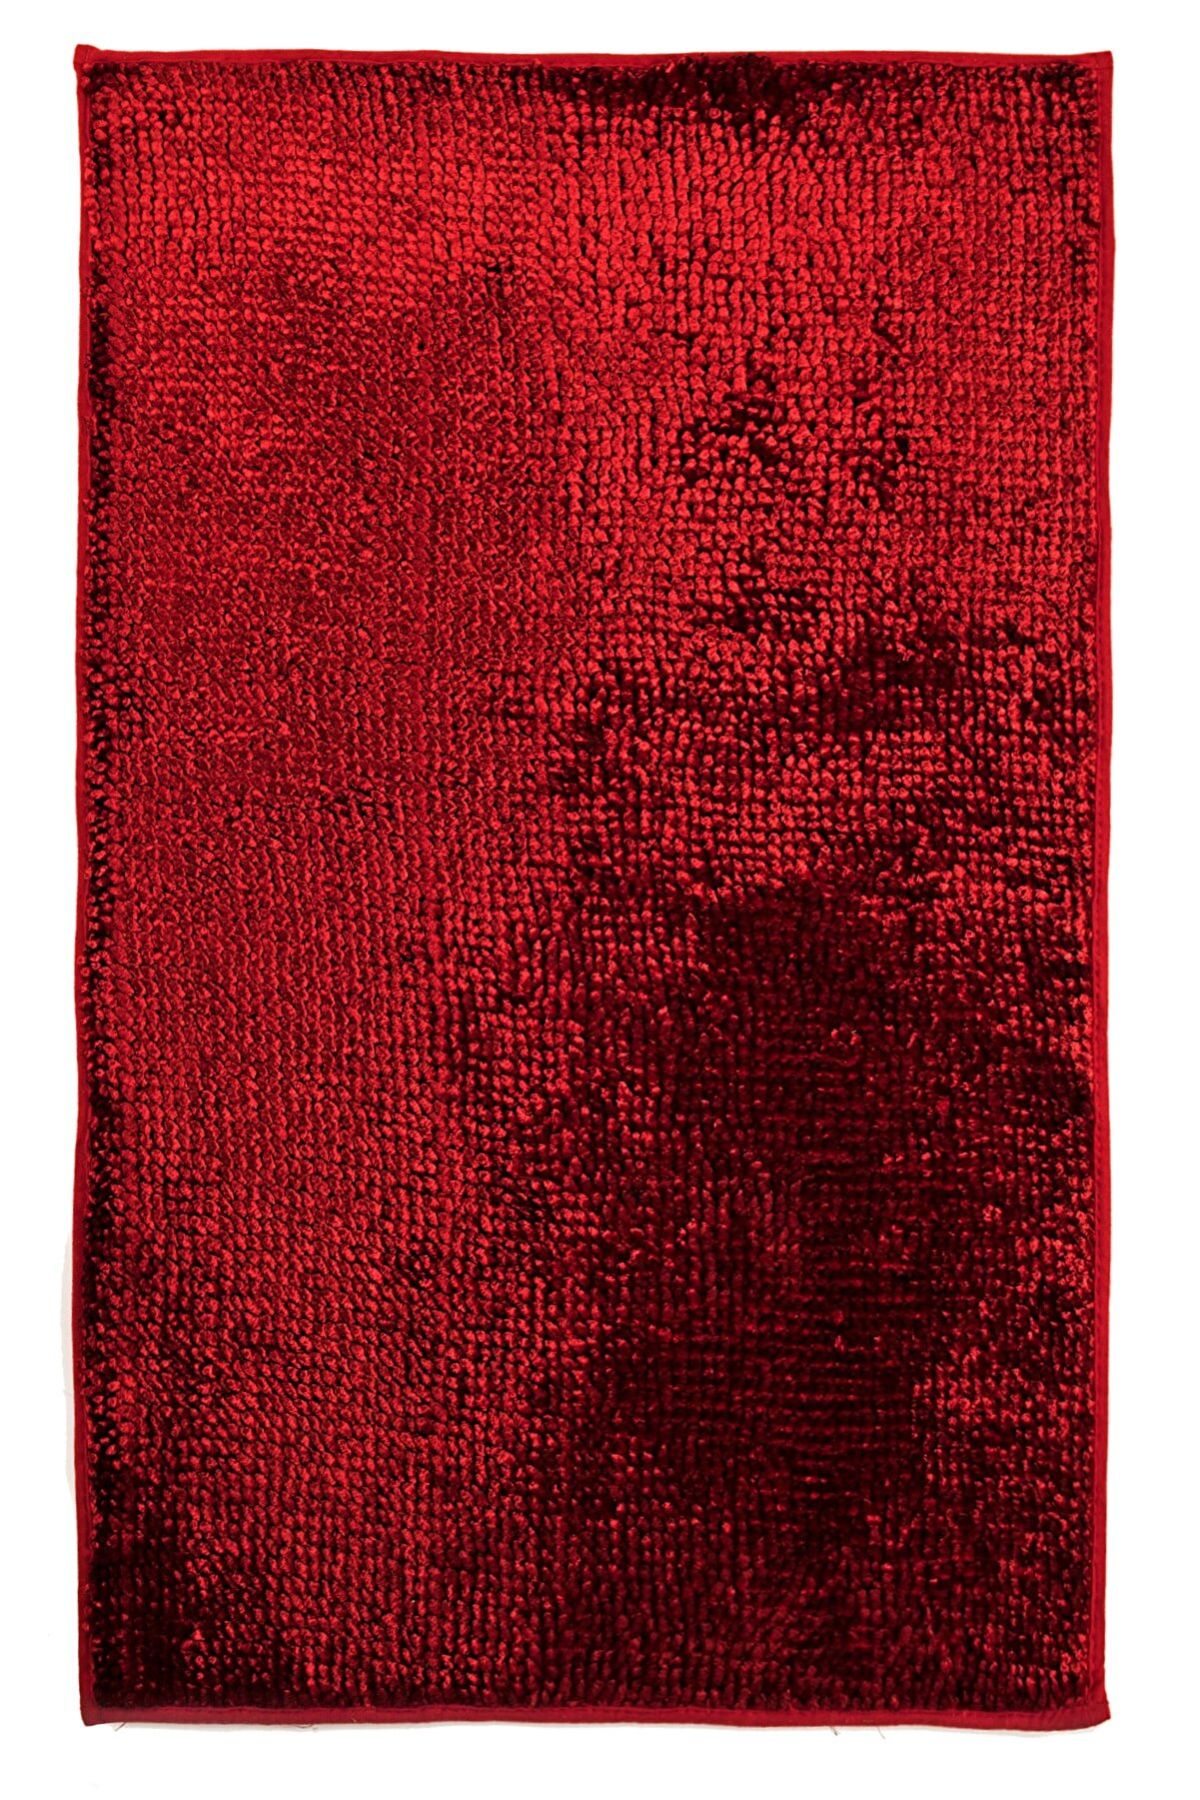 Covor Solino rosu homs,75X120 cm,10094